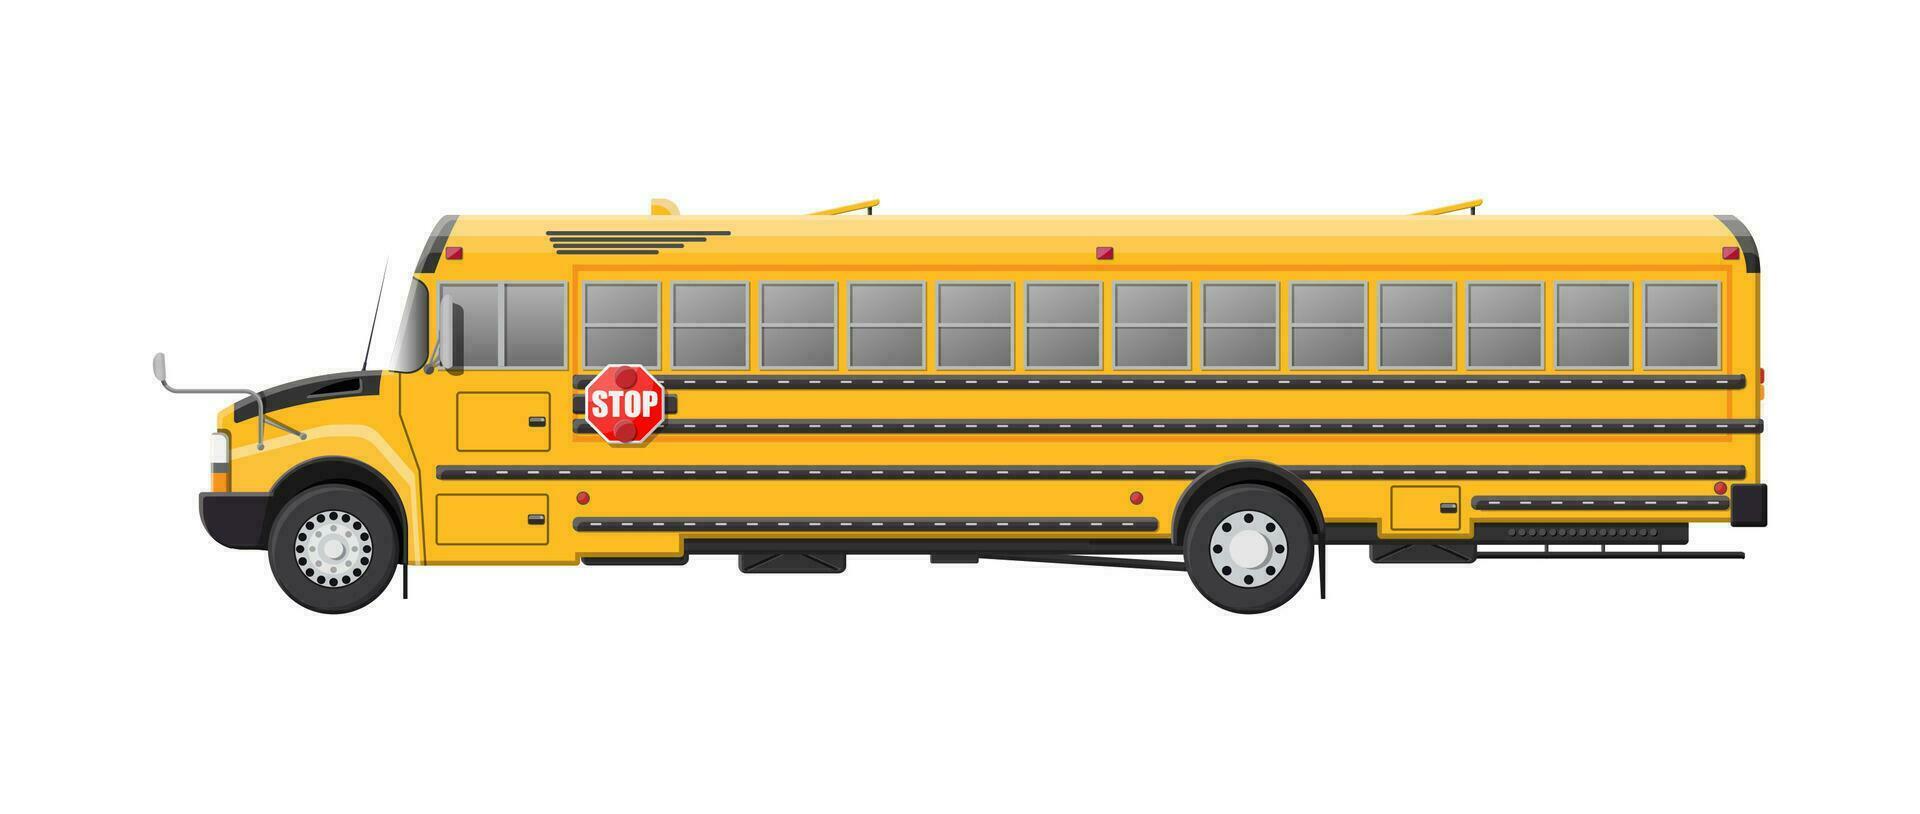 amarelo grandes clássico escola ônibus. crianças equitação ônibus escolar transporte. Educação transporte. vetor ilustração dentro plano estilo